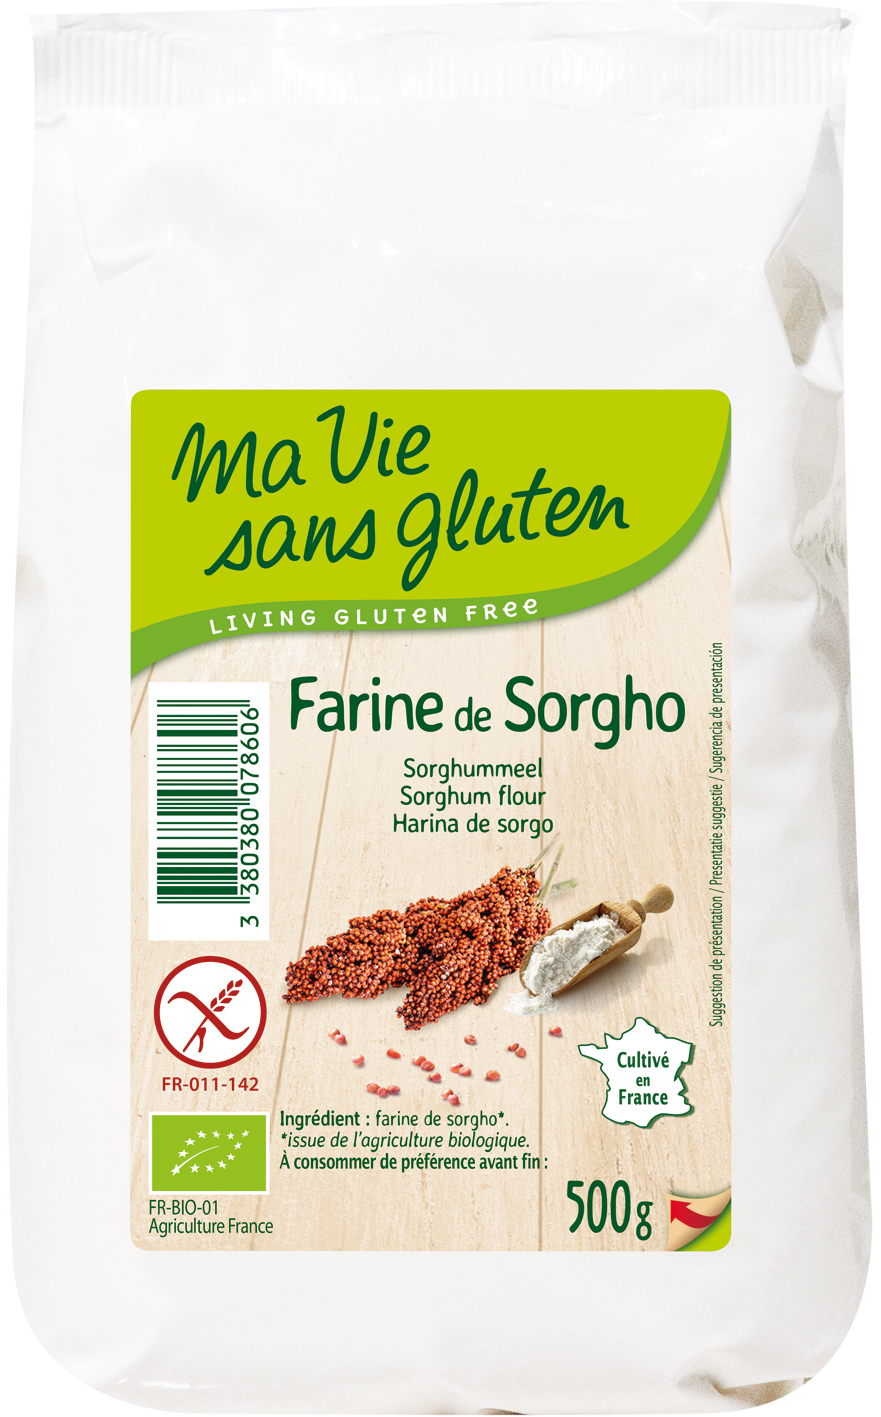 Ma vie sans gluten - Farines - Farine de Sorgho - 500g